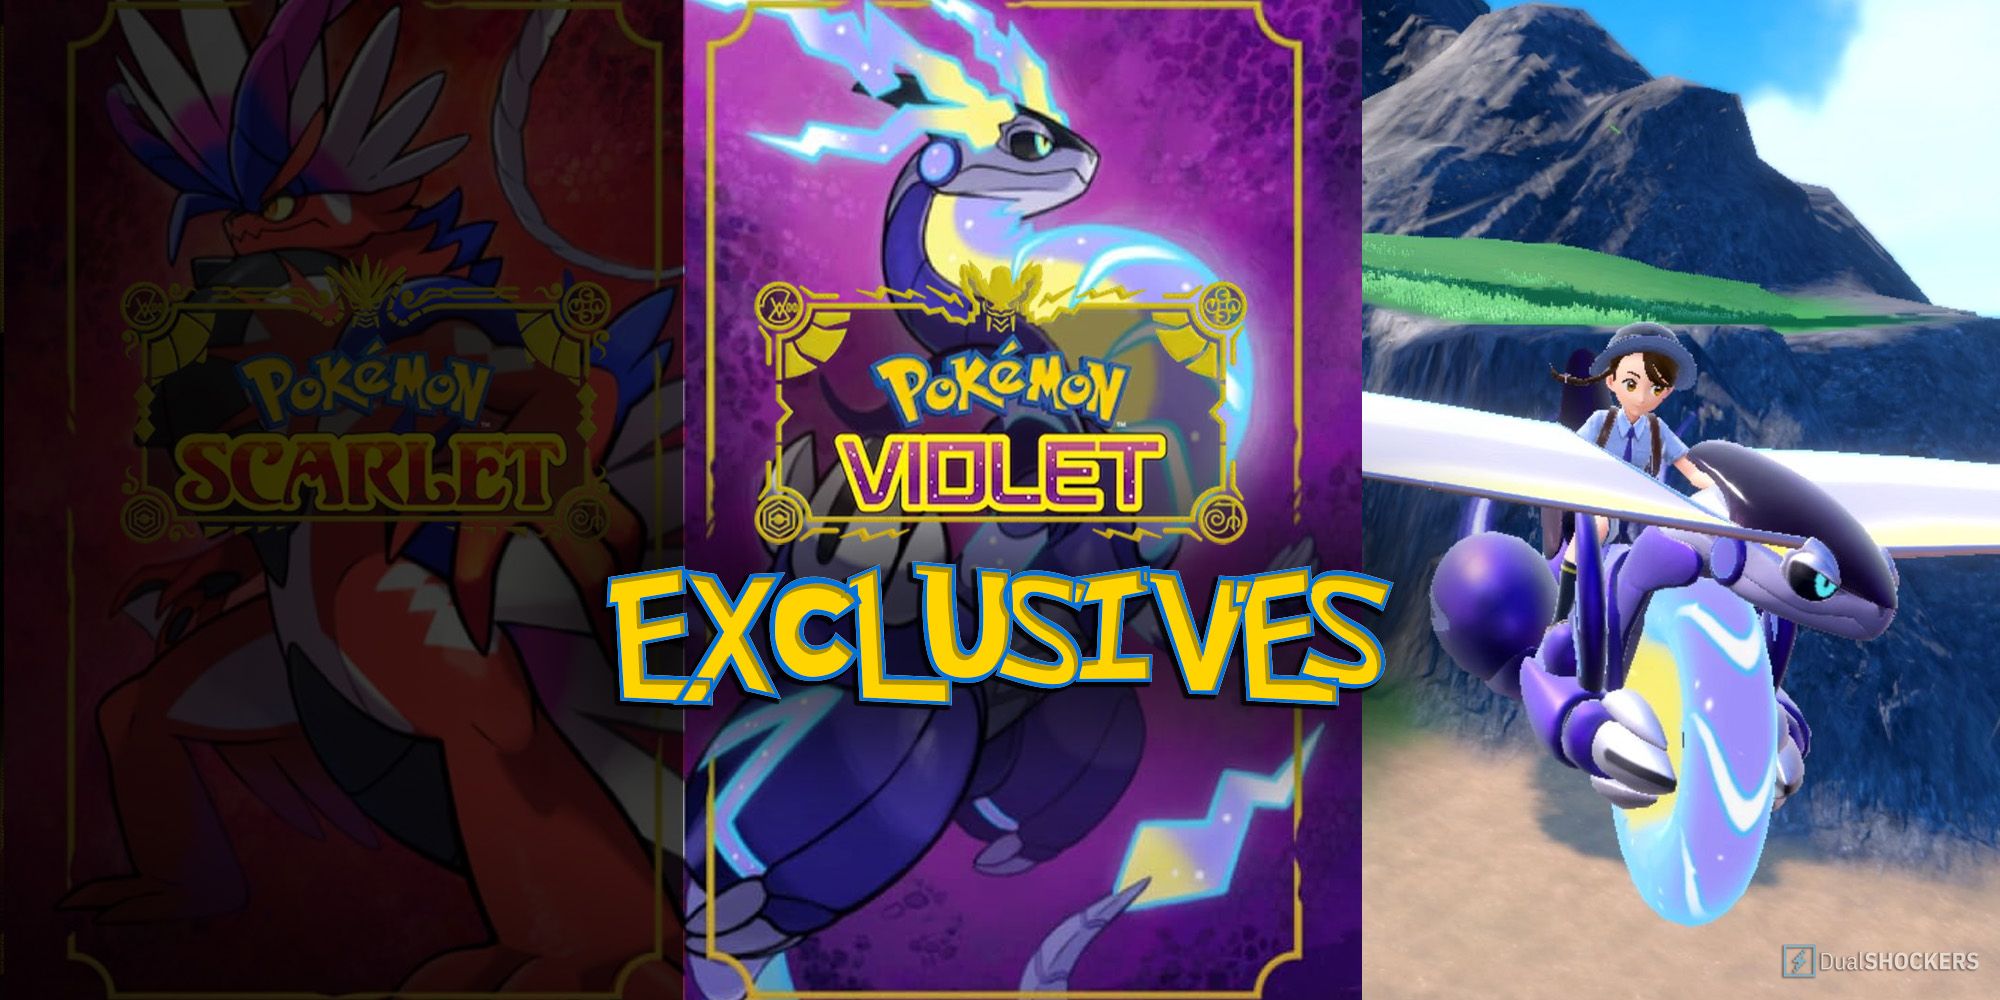 violet exclusives pokemon scarlet and violet